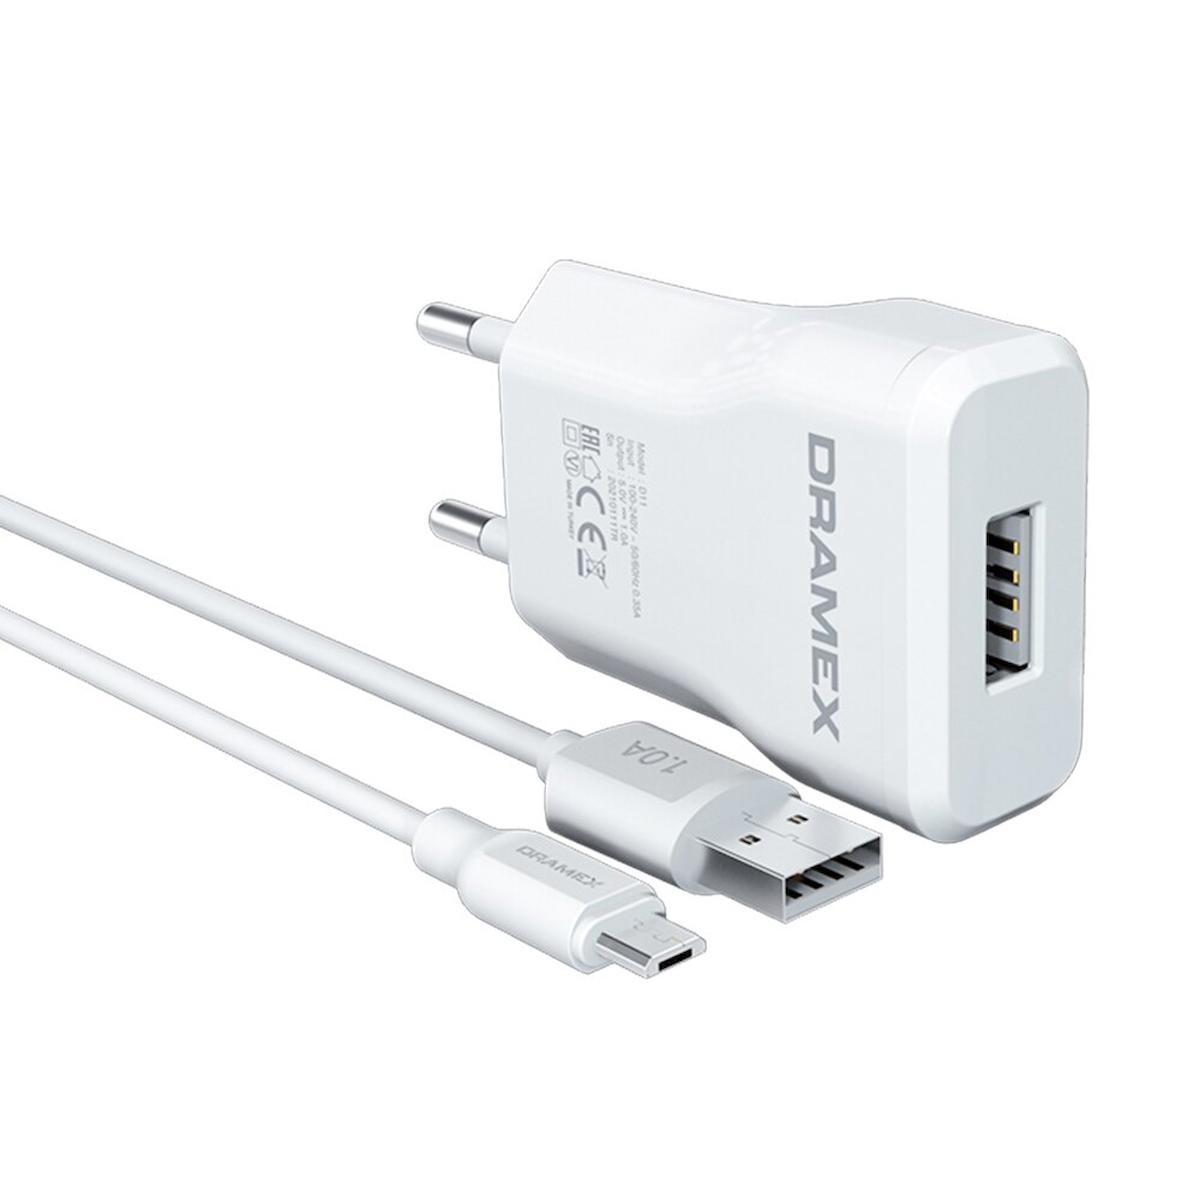 Dramex D11m Universal Micro USB Kablolu Hızlı Şarj Aleti Beyaz